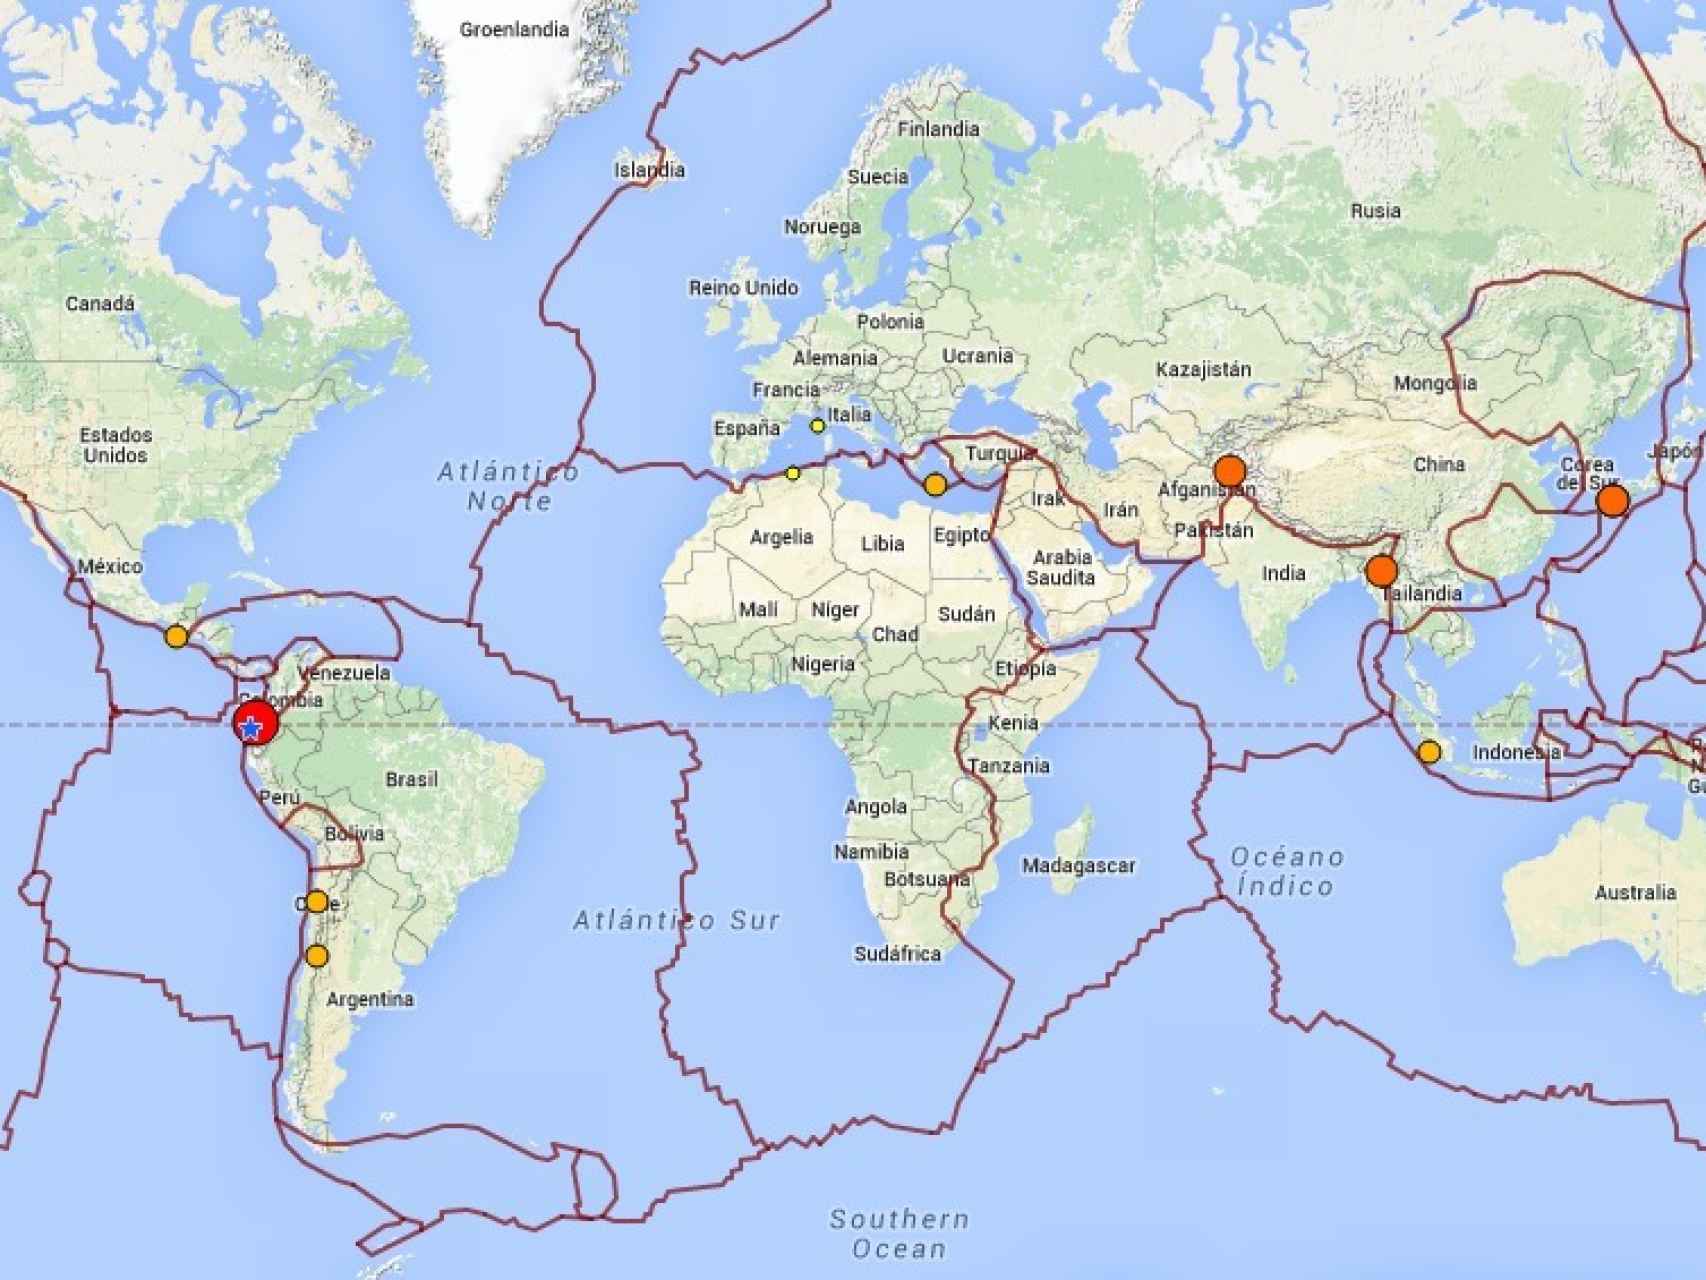 Mapa de los principales terremotos en las últimas 24 horas, con las placas tectónicas marcadas.